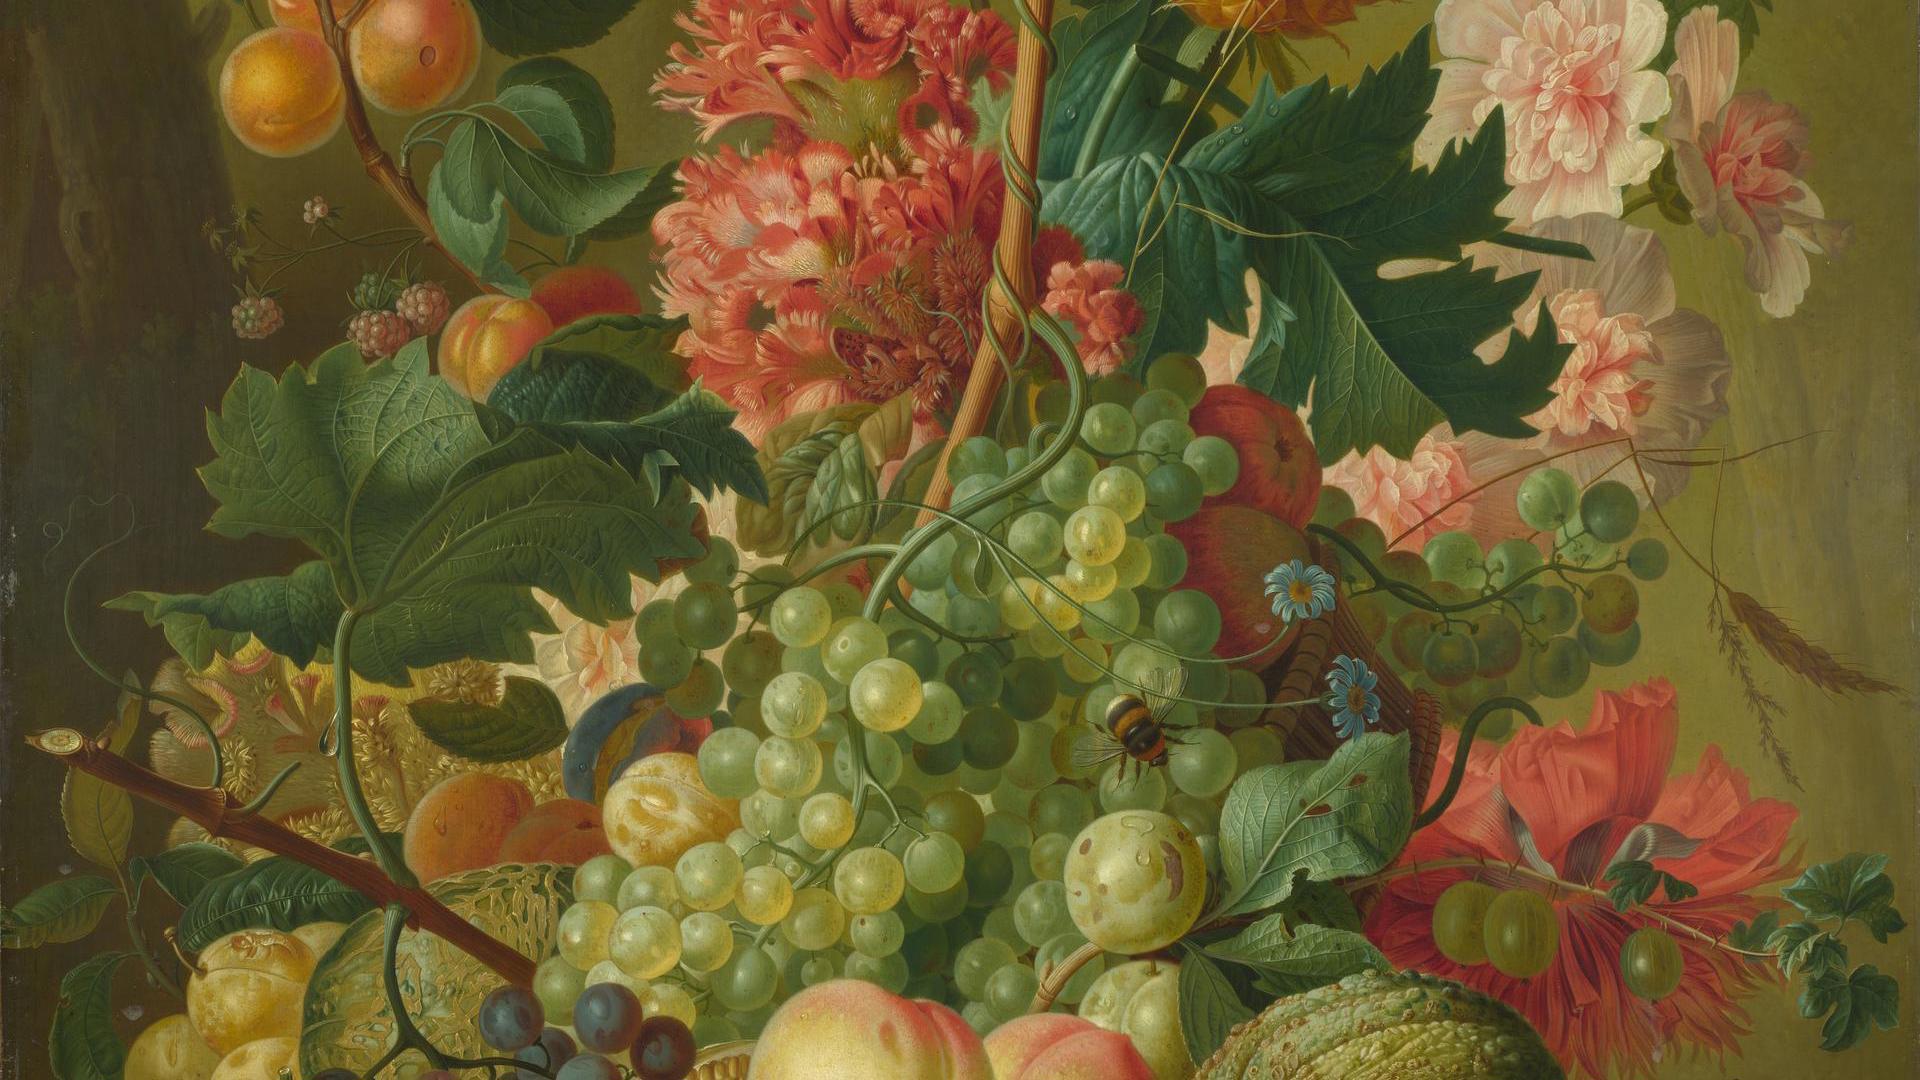 Fruit and Flowers by Paulus Theodorus van Brussel